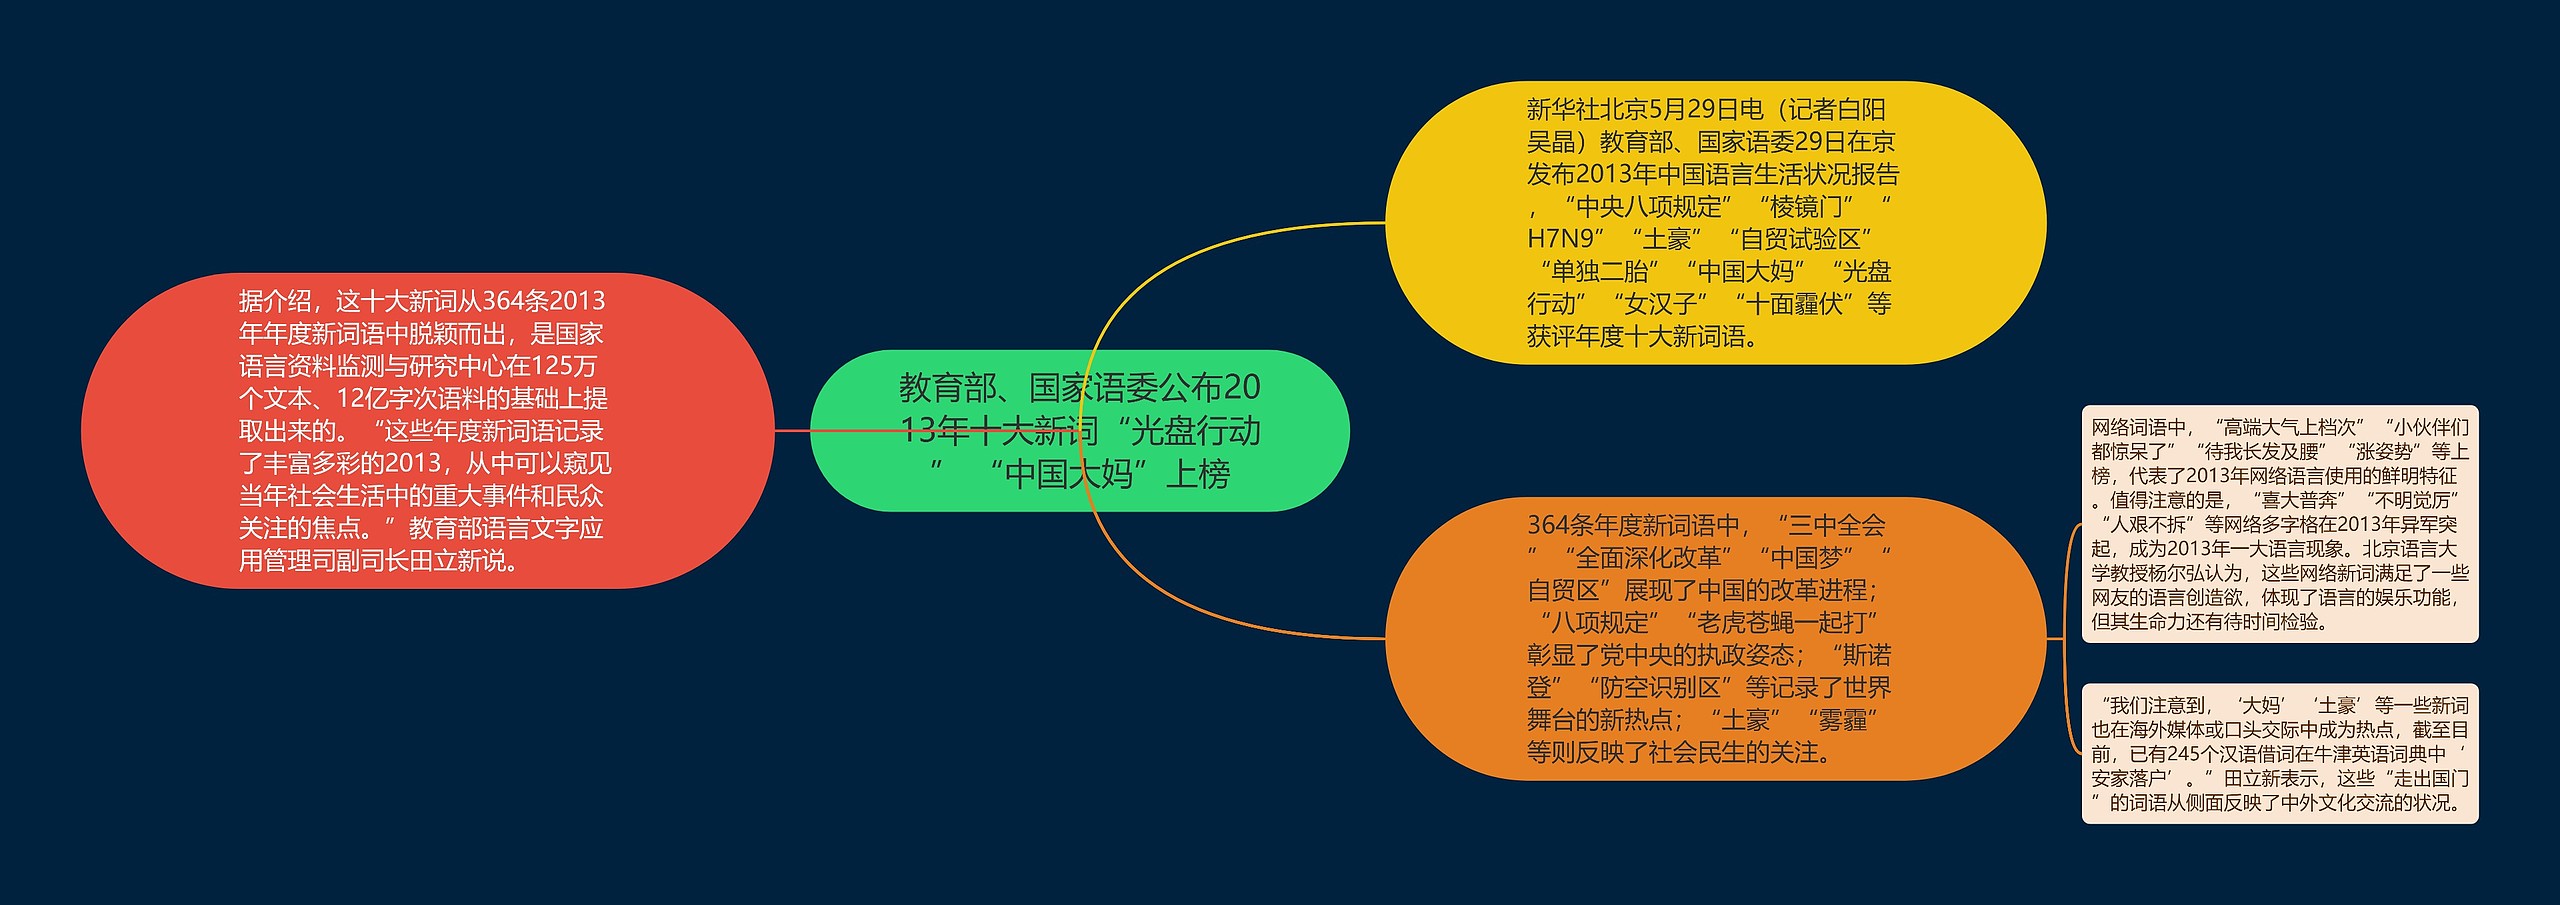 教育部、国家语委公布2013年十大新词“光盘行动” “中国大妈”上榜